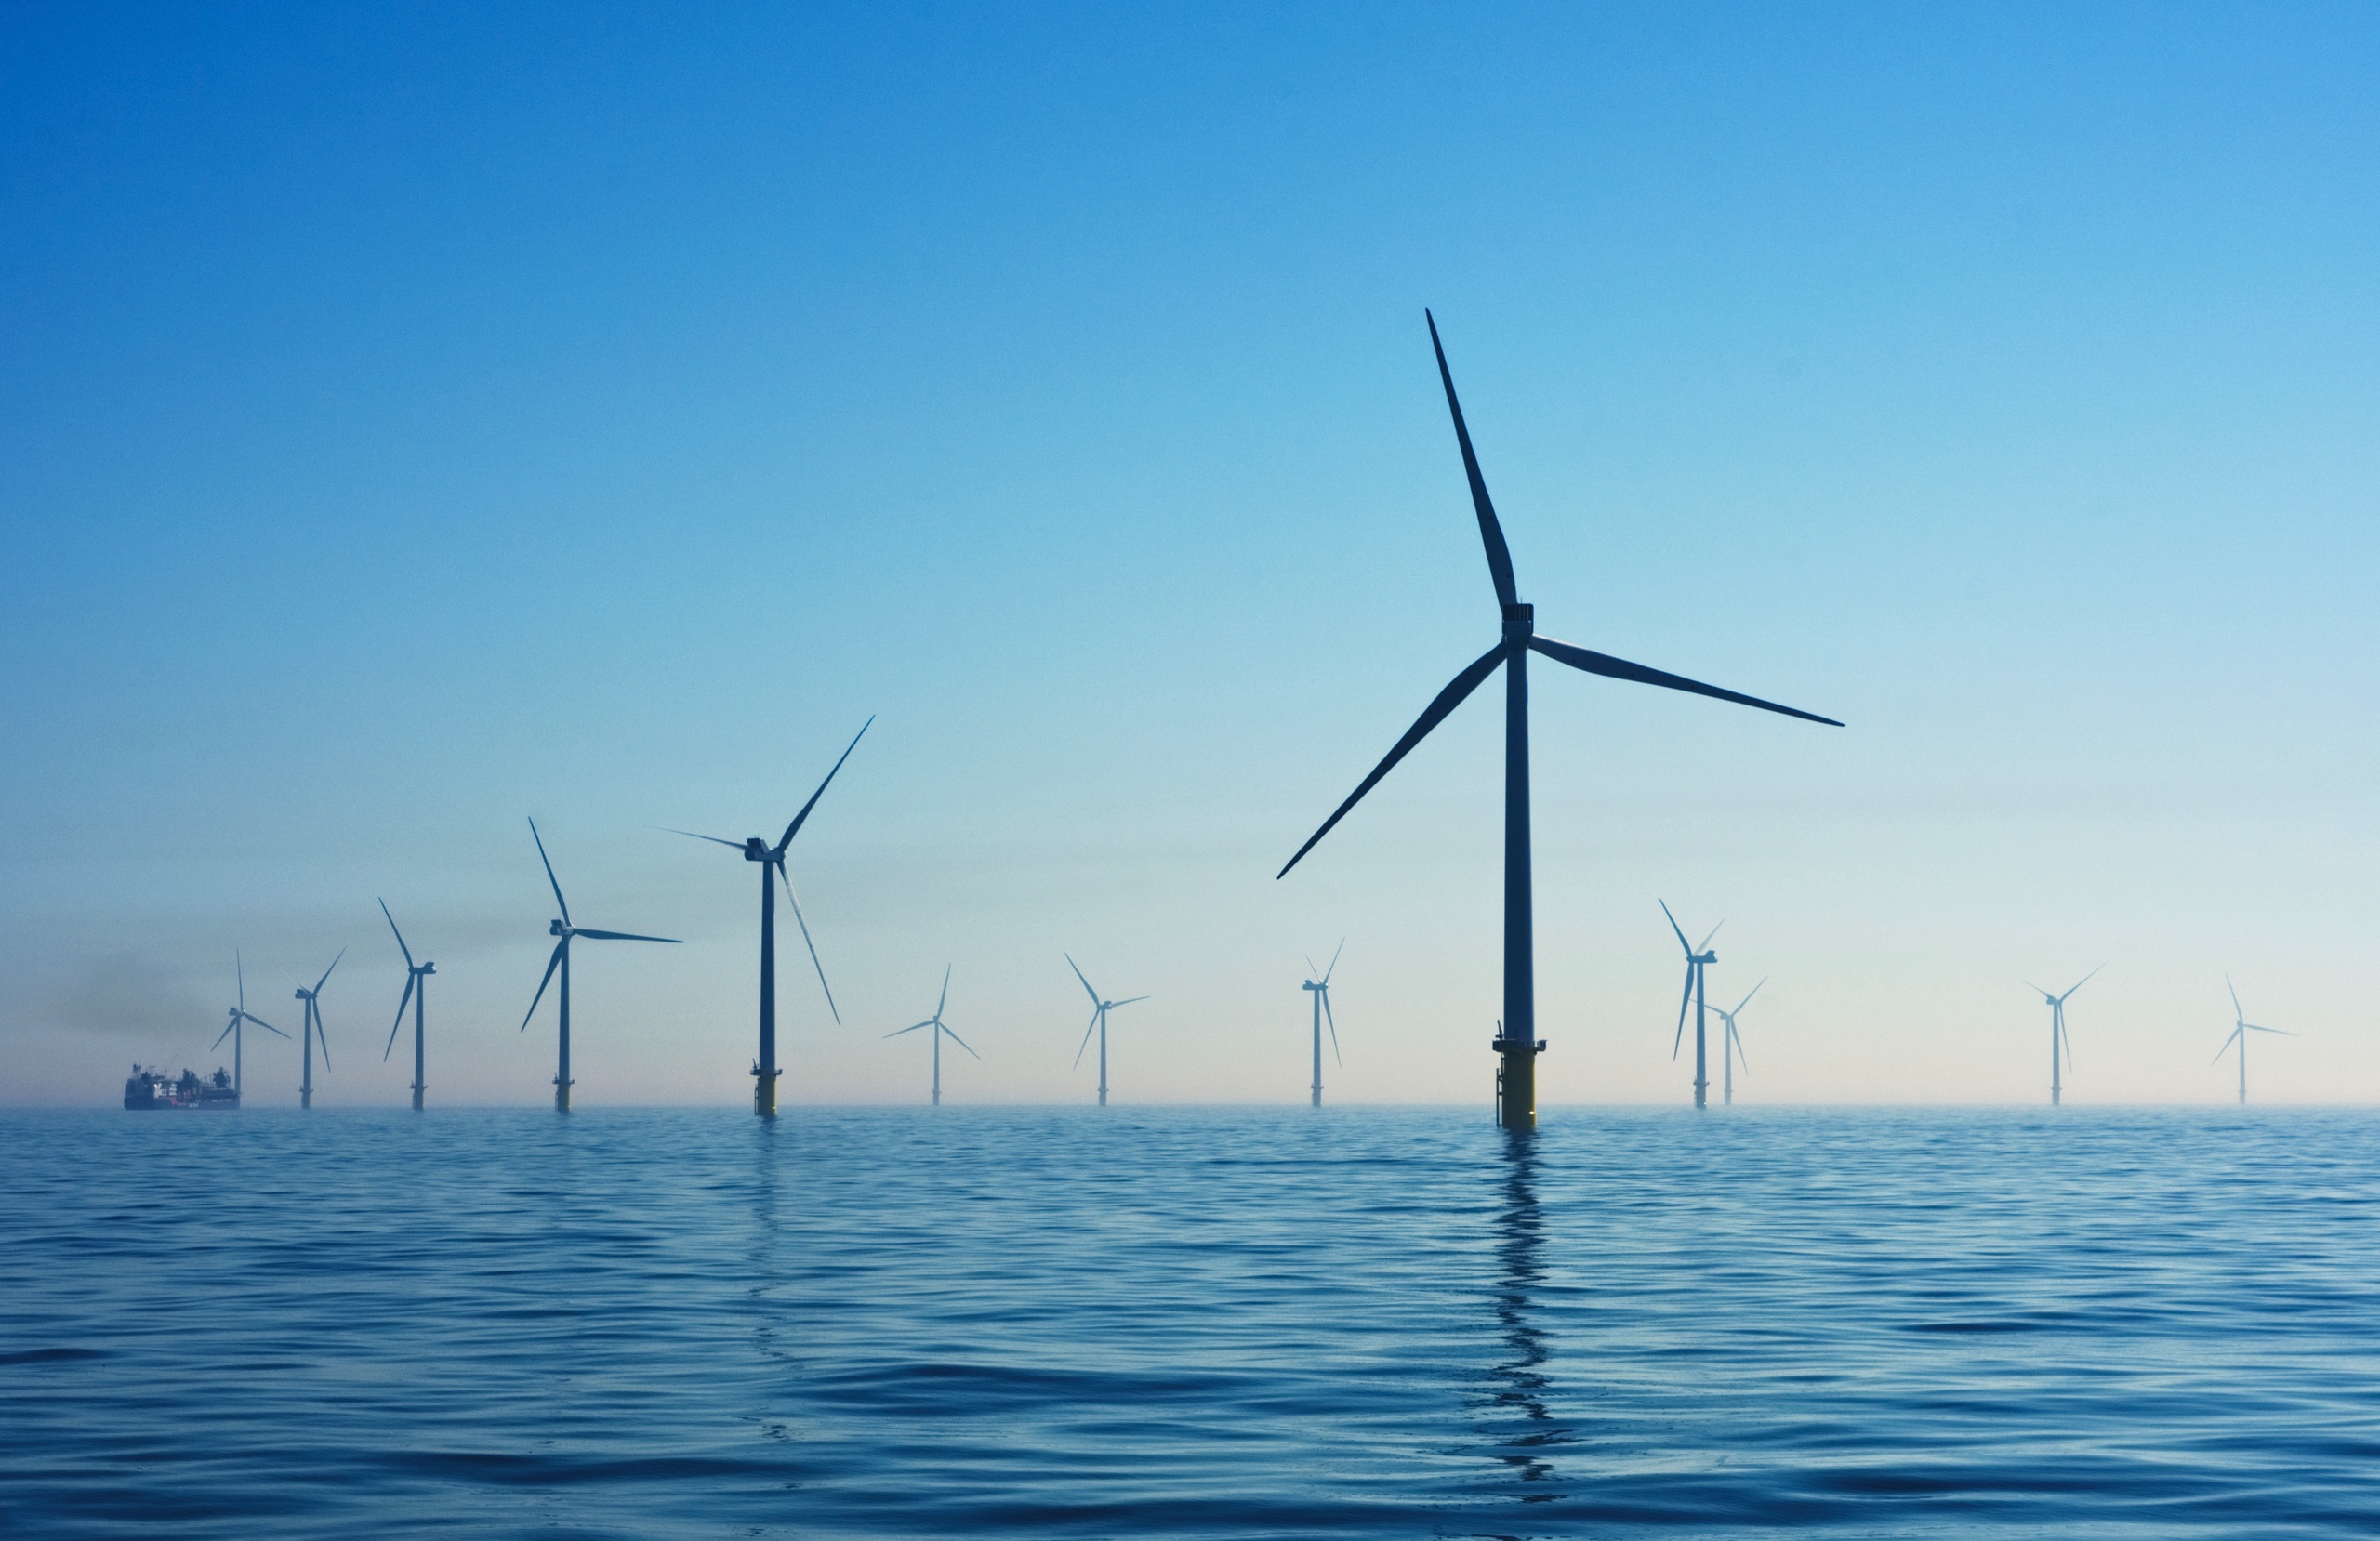 Windmolens op de Noordzee moeten in 2050 bijna 300 gigawatt aan elektriciteit gaan opbrengen. Dat betekent in de praktijk dat er zo'n 30.000 windmolens op de Noordzee zullen komen te staan